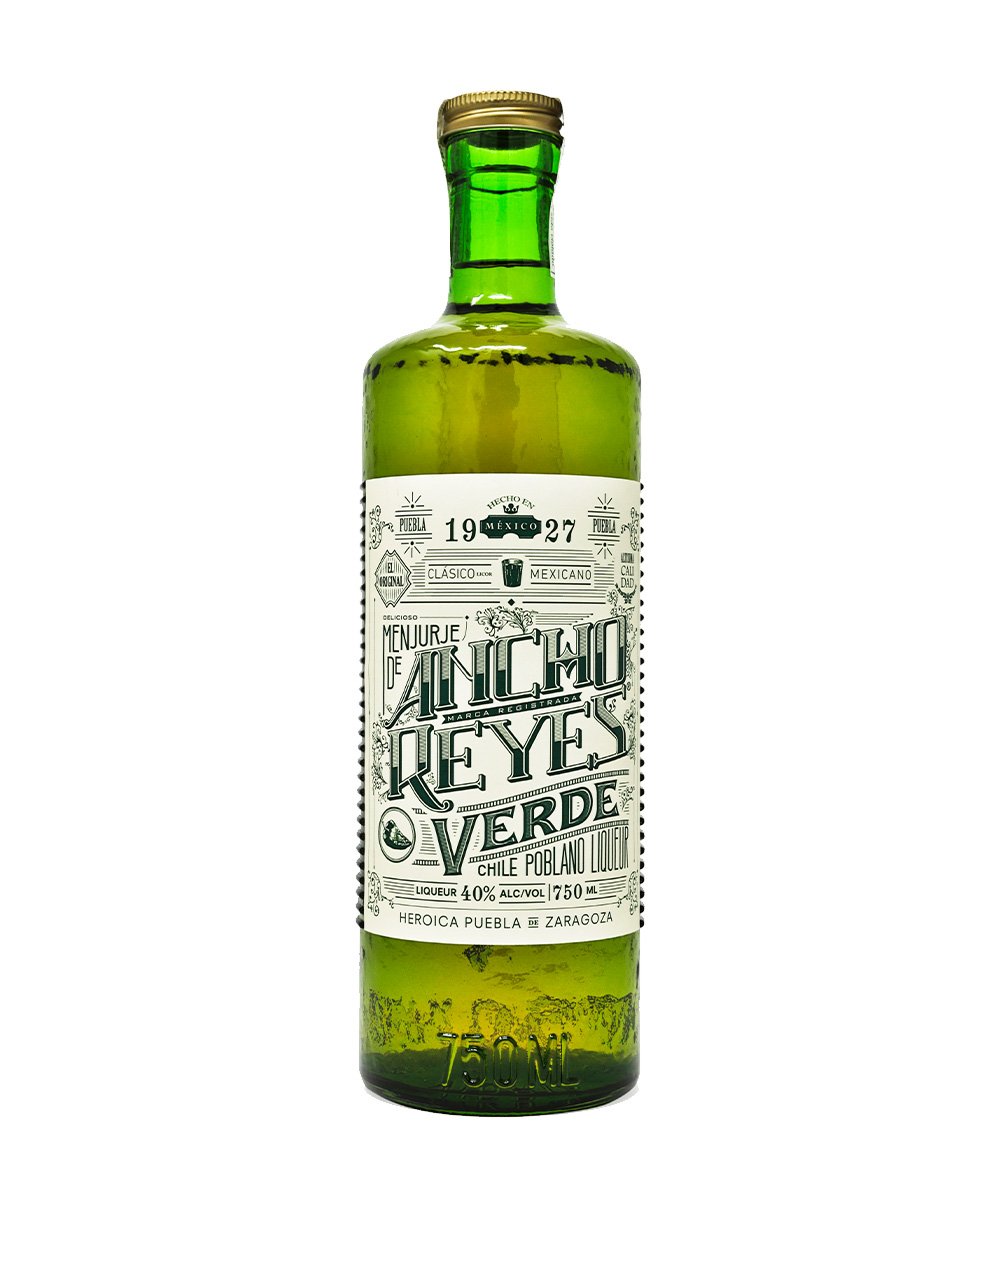 Ancho Reyes Verde chile liqueur bottle